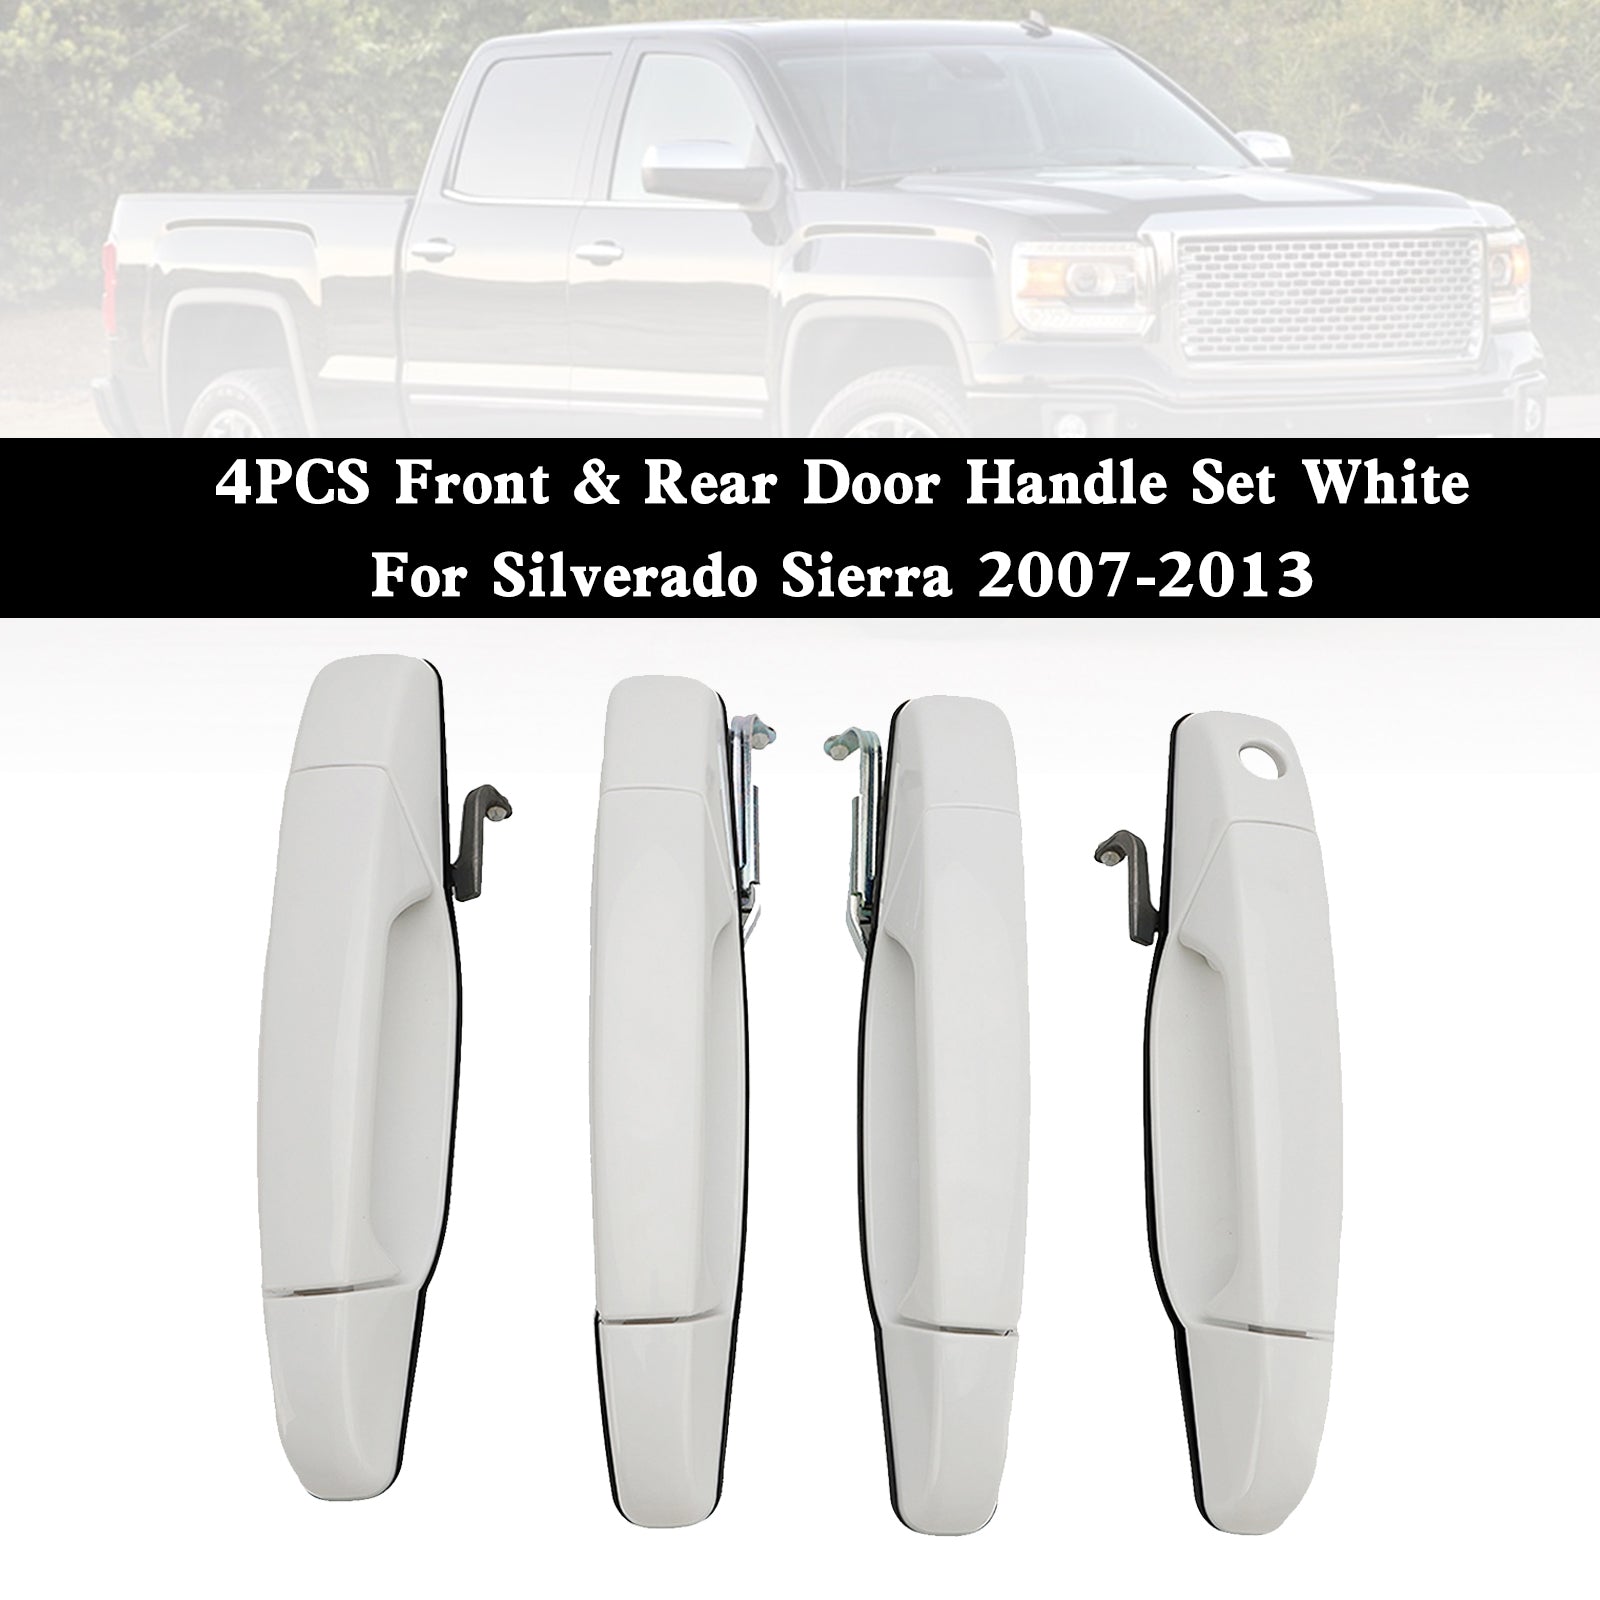 Silverado Sierra 2007-2013 maniglia per porta anteriore e posteriore bianca, set di 4